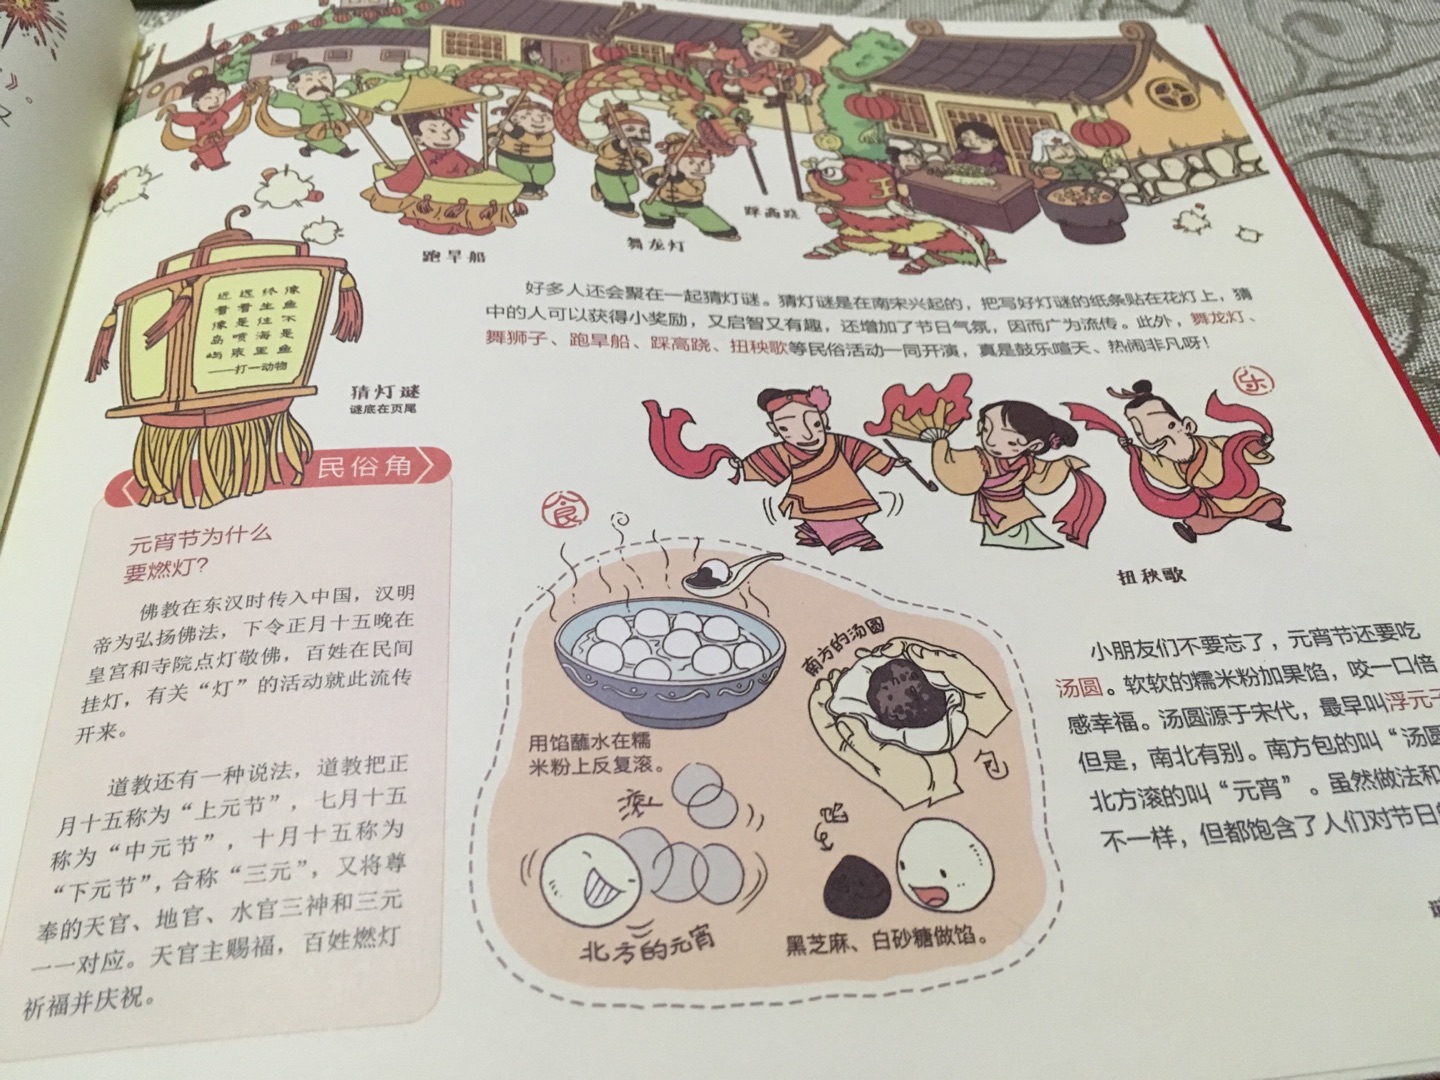 首页以时间轴的方式将中西方的节日都做了标注。书内重点介绍了各个中国传统节日的由来和风俗（比如有什么活动，有什么传统食物等等），对小孩了解传统文化还是很有帮助的，好评。